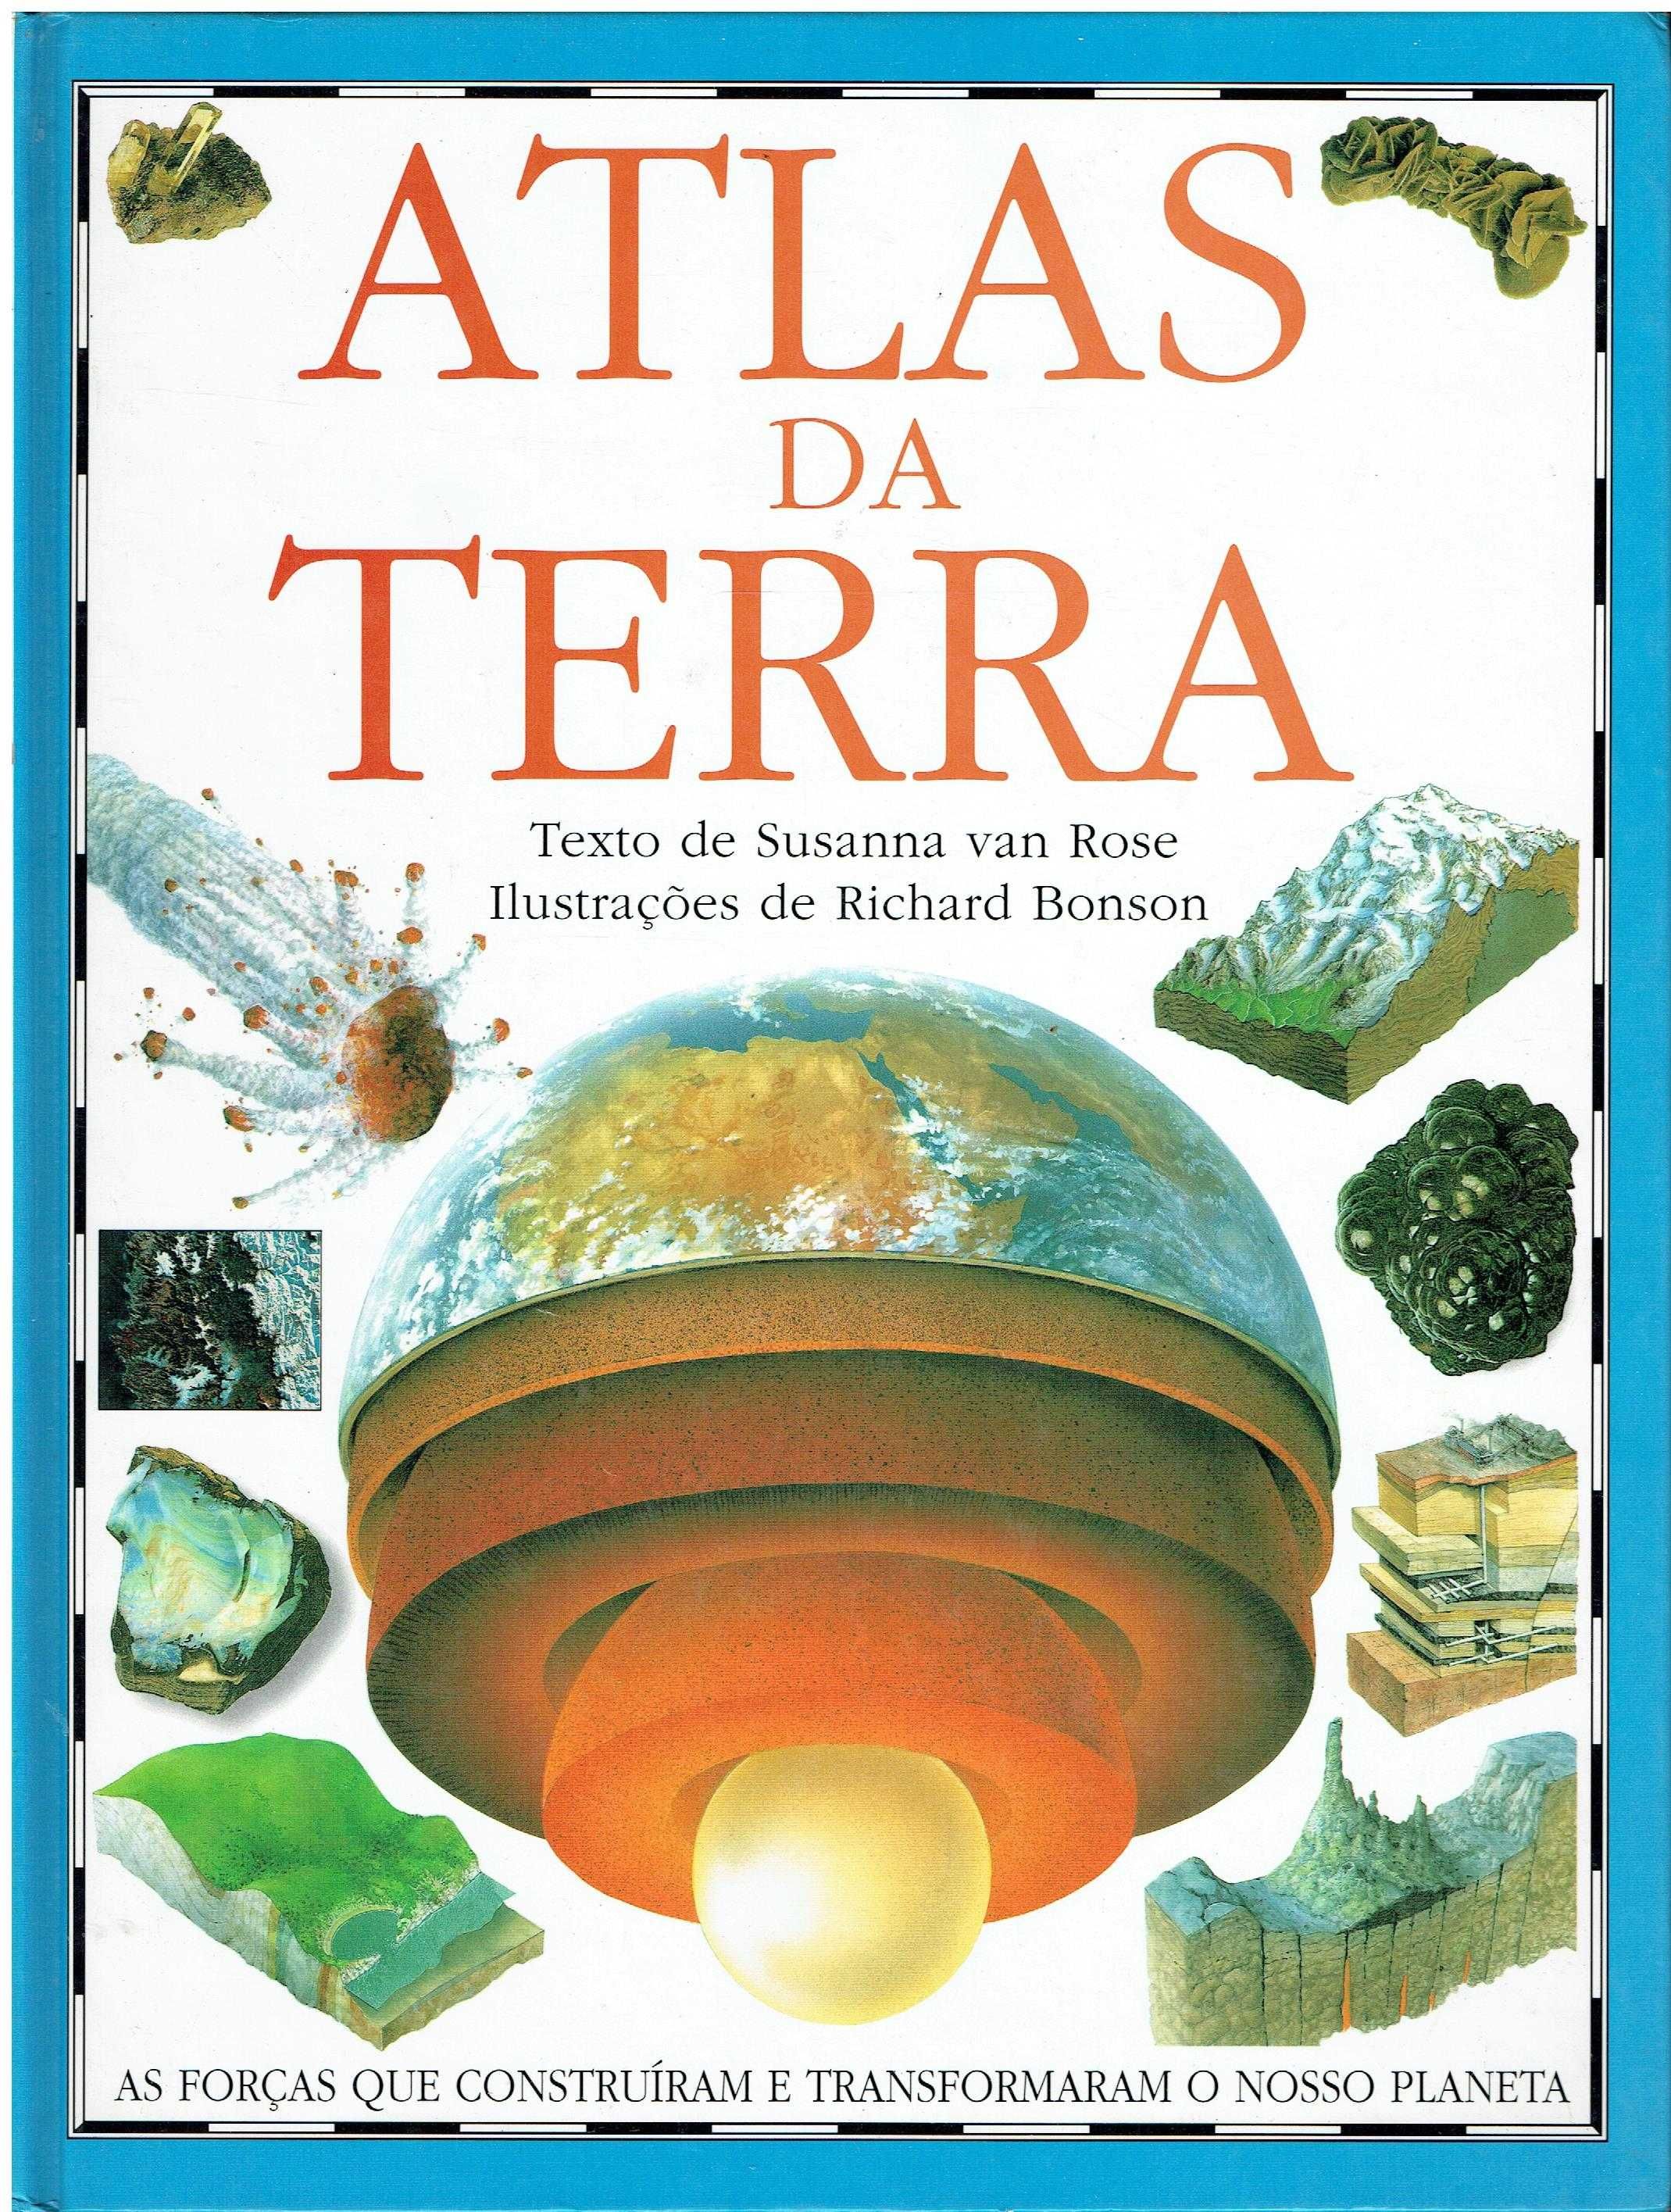 12817

Atlas da Terra
de Susanna Rose